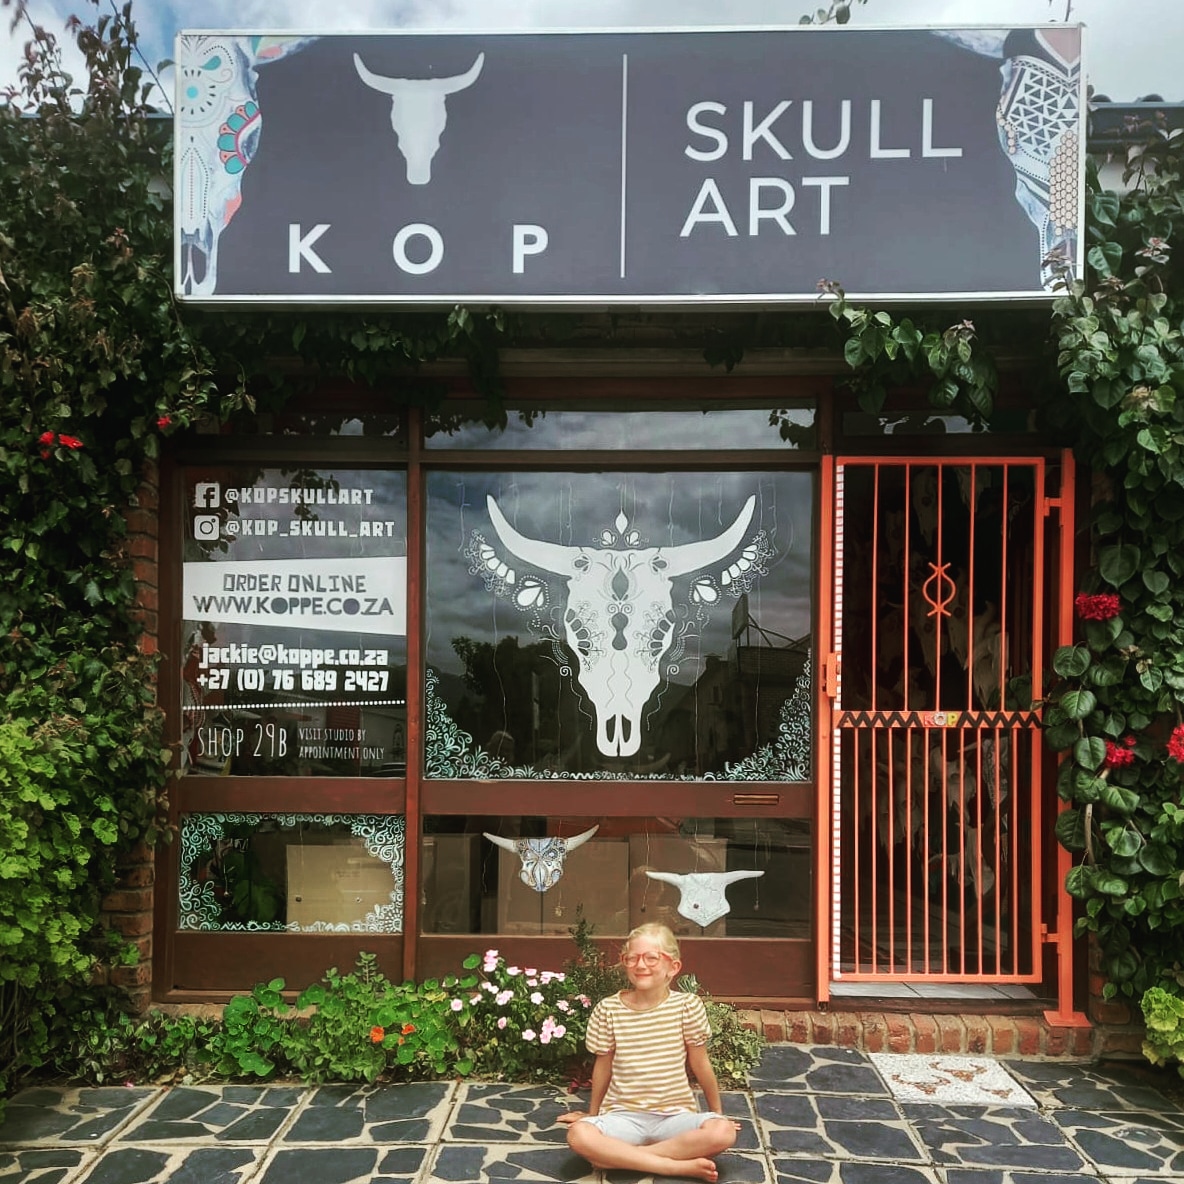 Buy Kop Skull Art Online Jaqueline Chantler